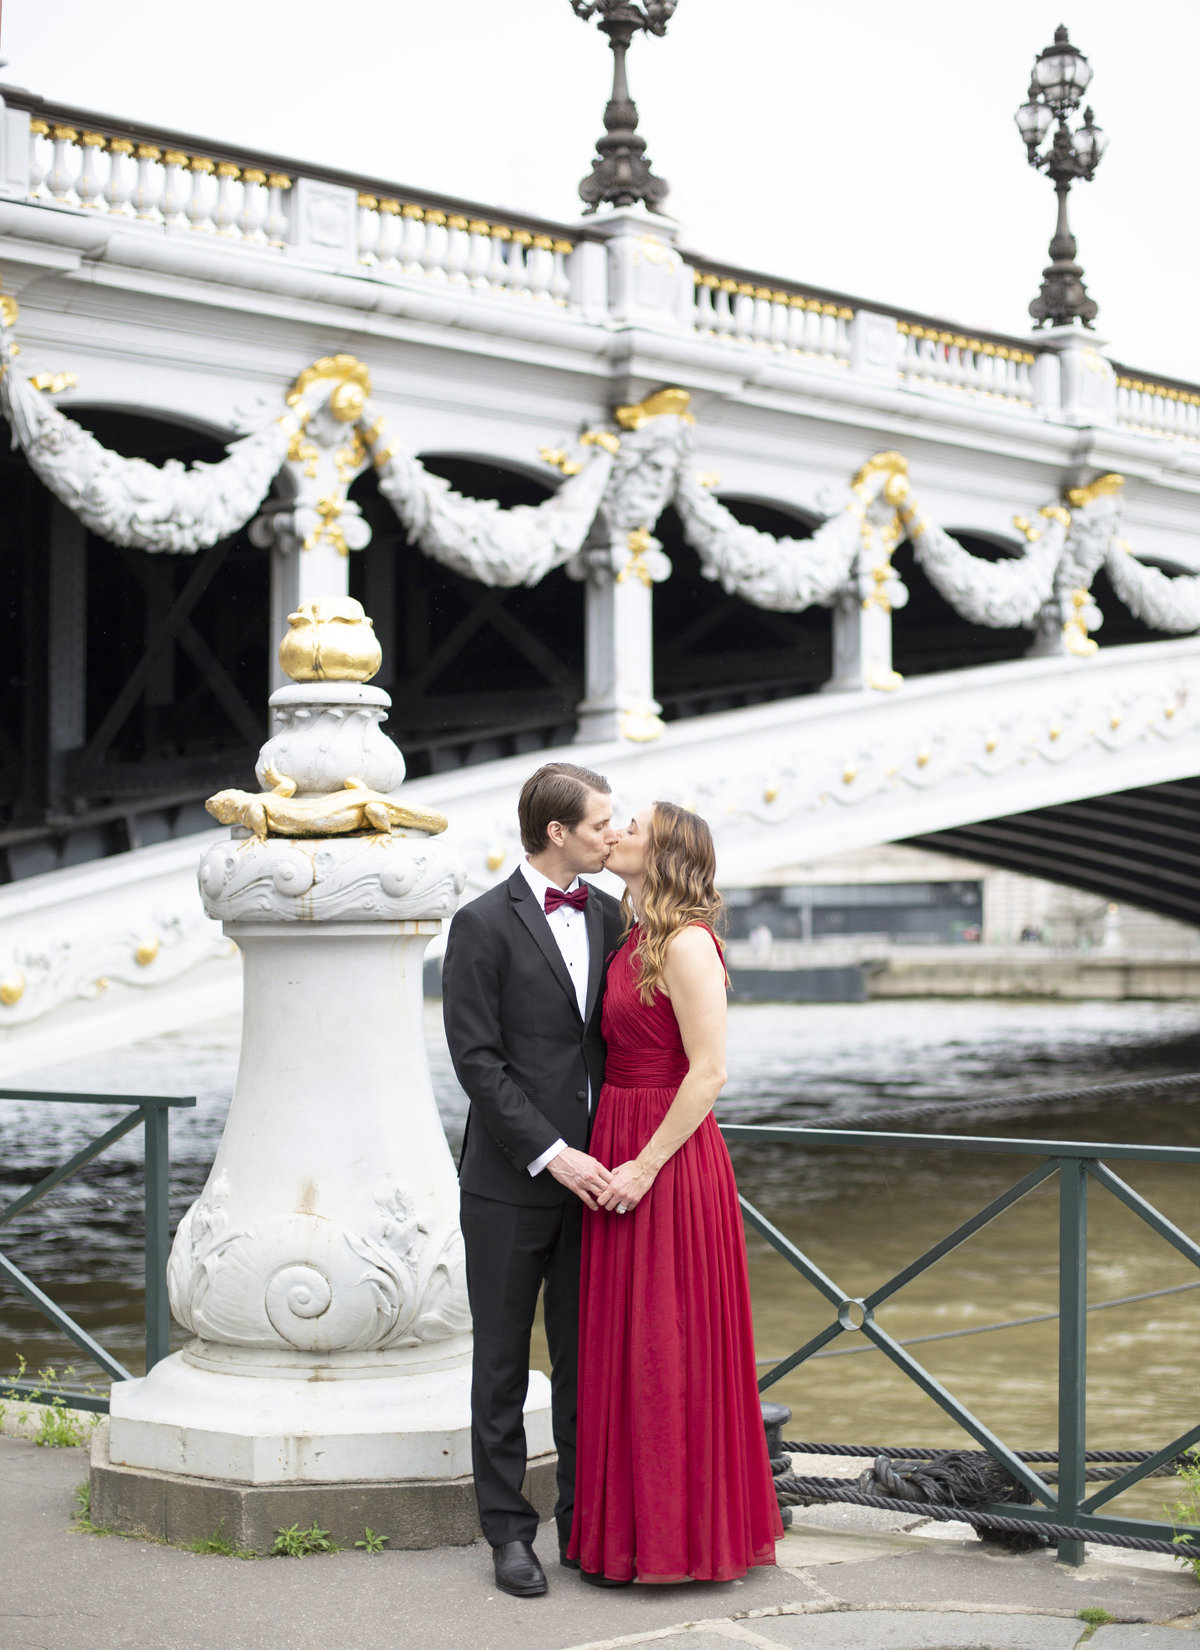 Elegant couple poses for photo on bridge in Paris 60